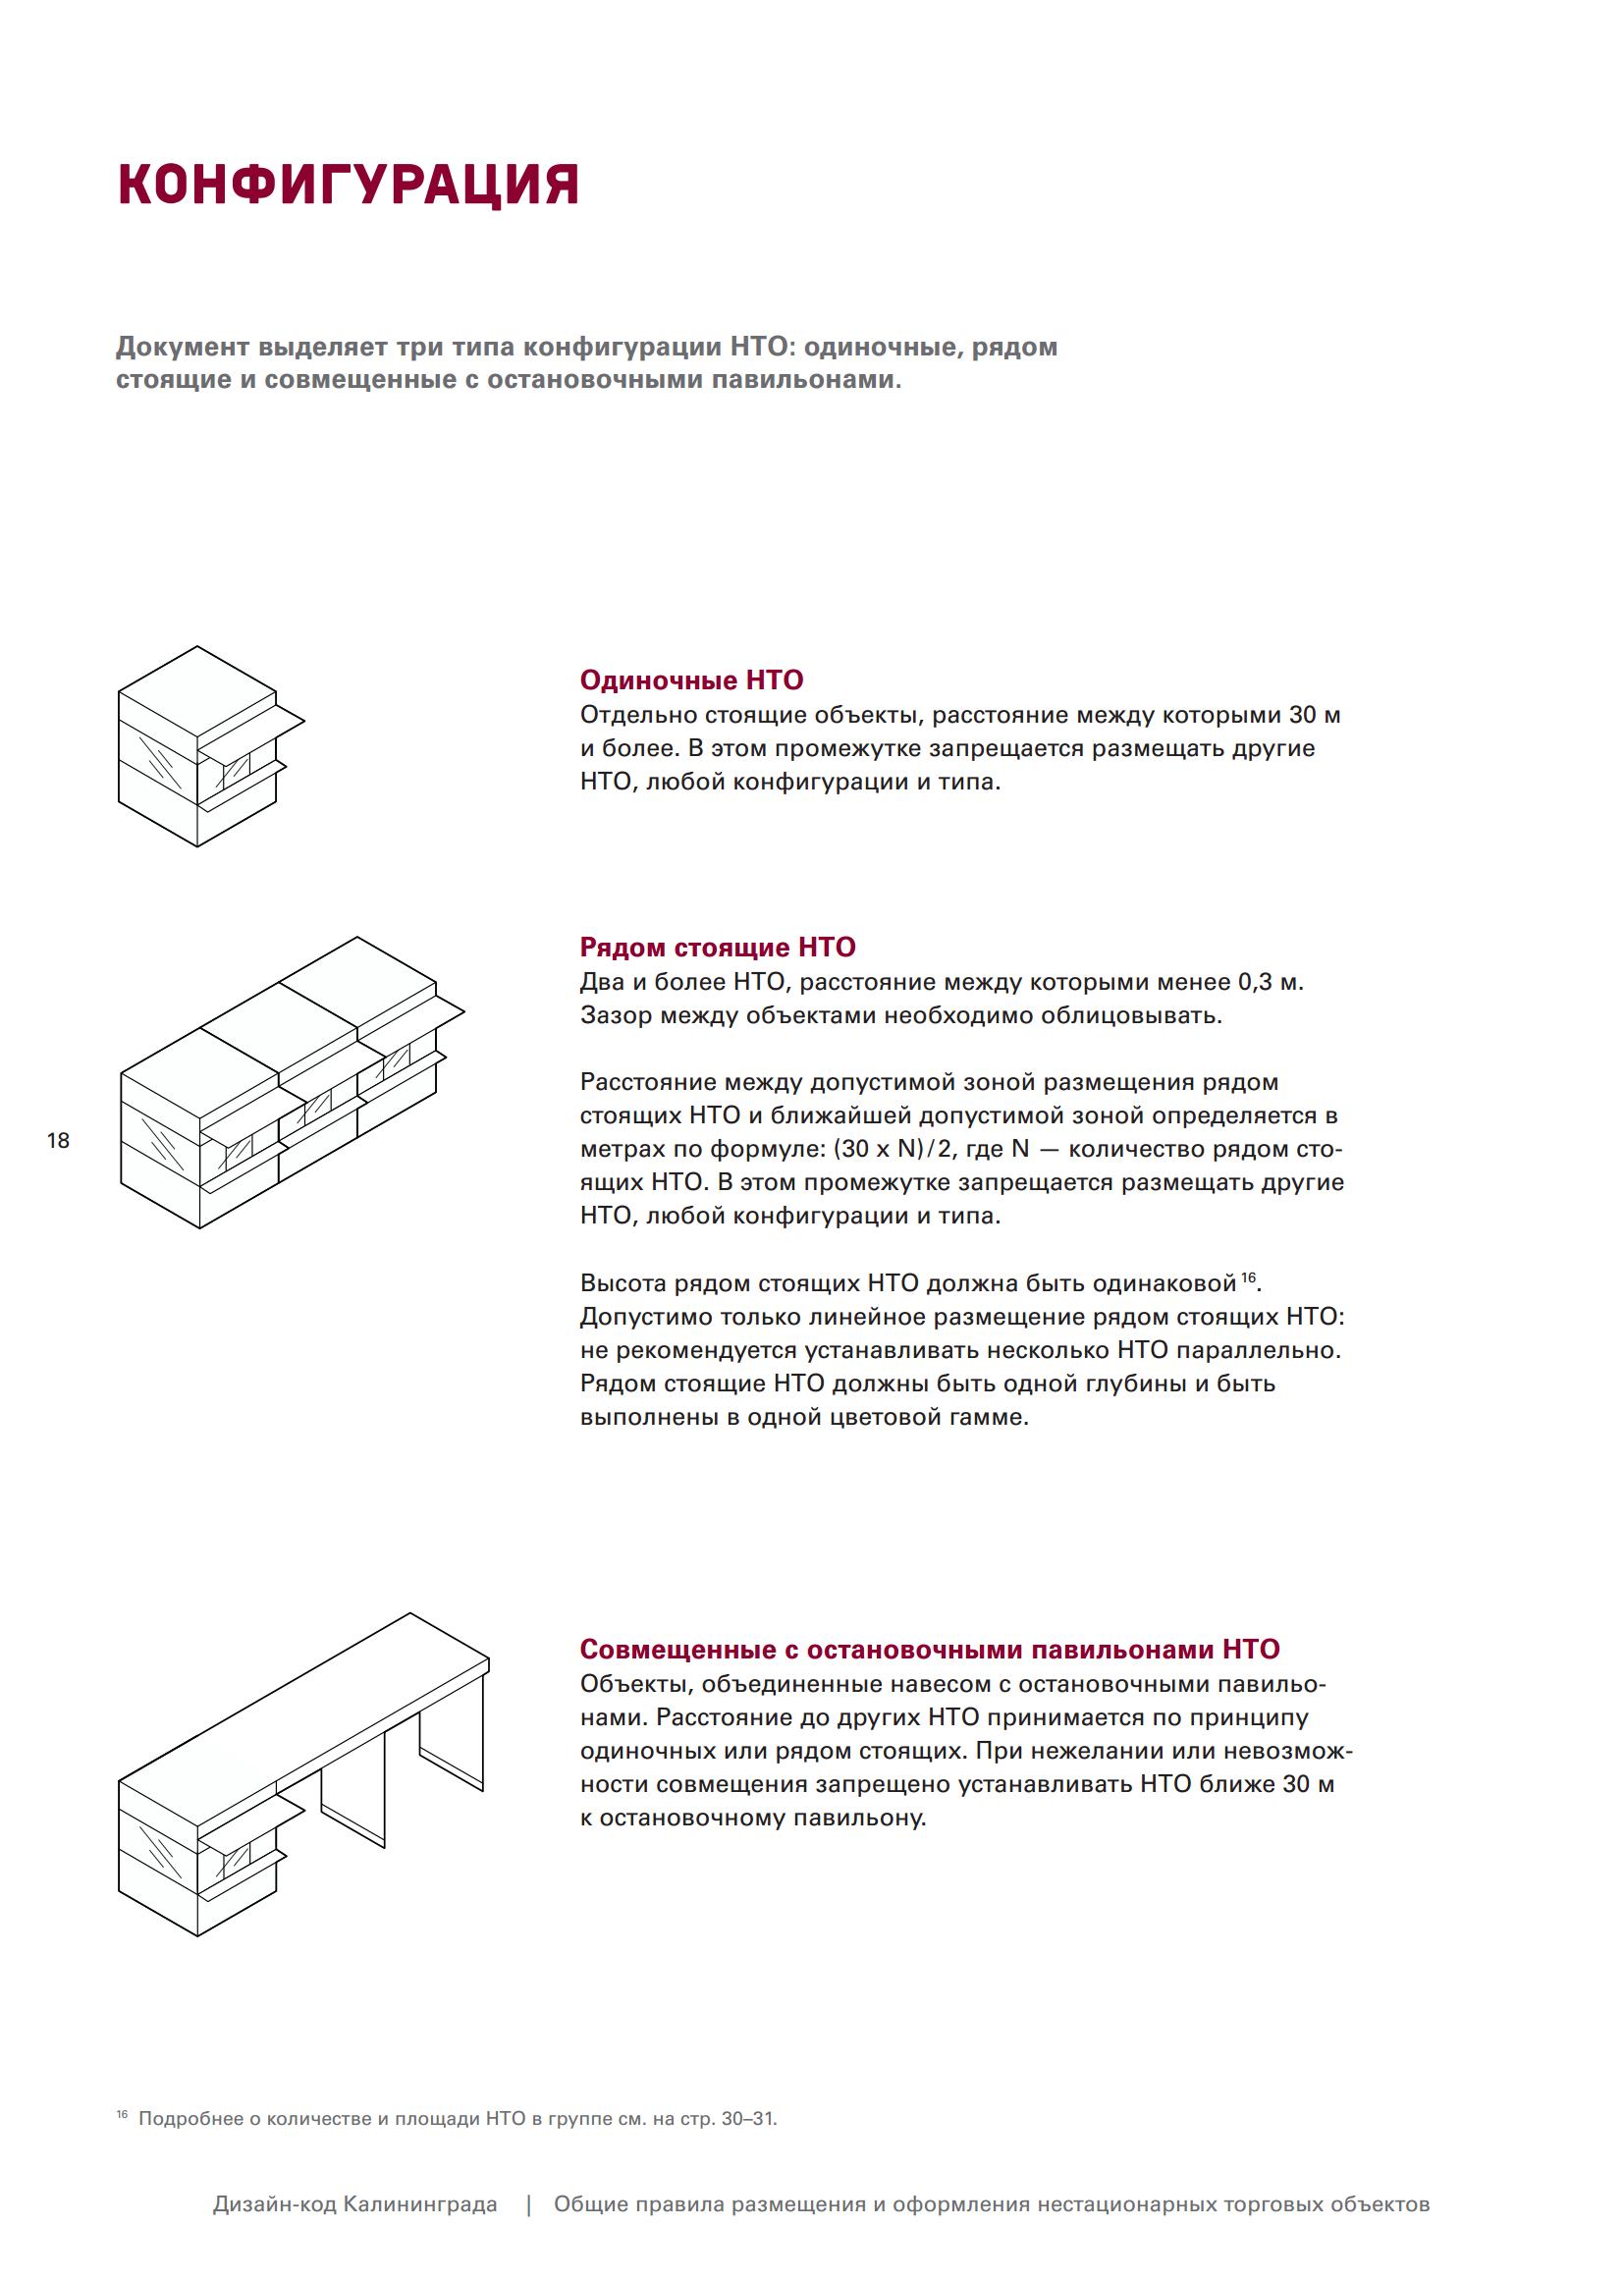 Дизайн-код Калининграда. Общие правила размещения и оформления нестационарных торговых объектов